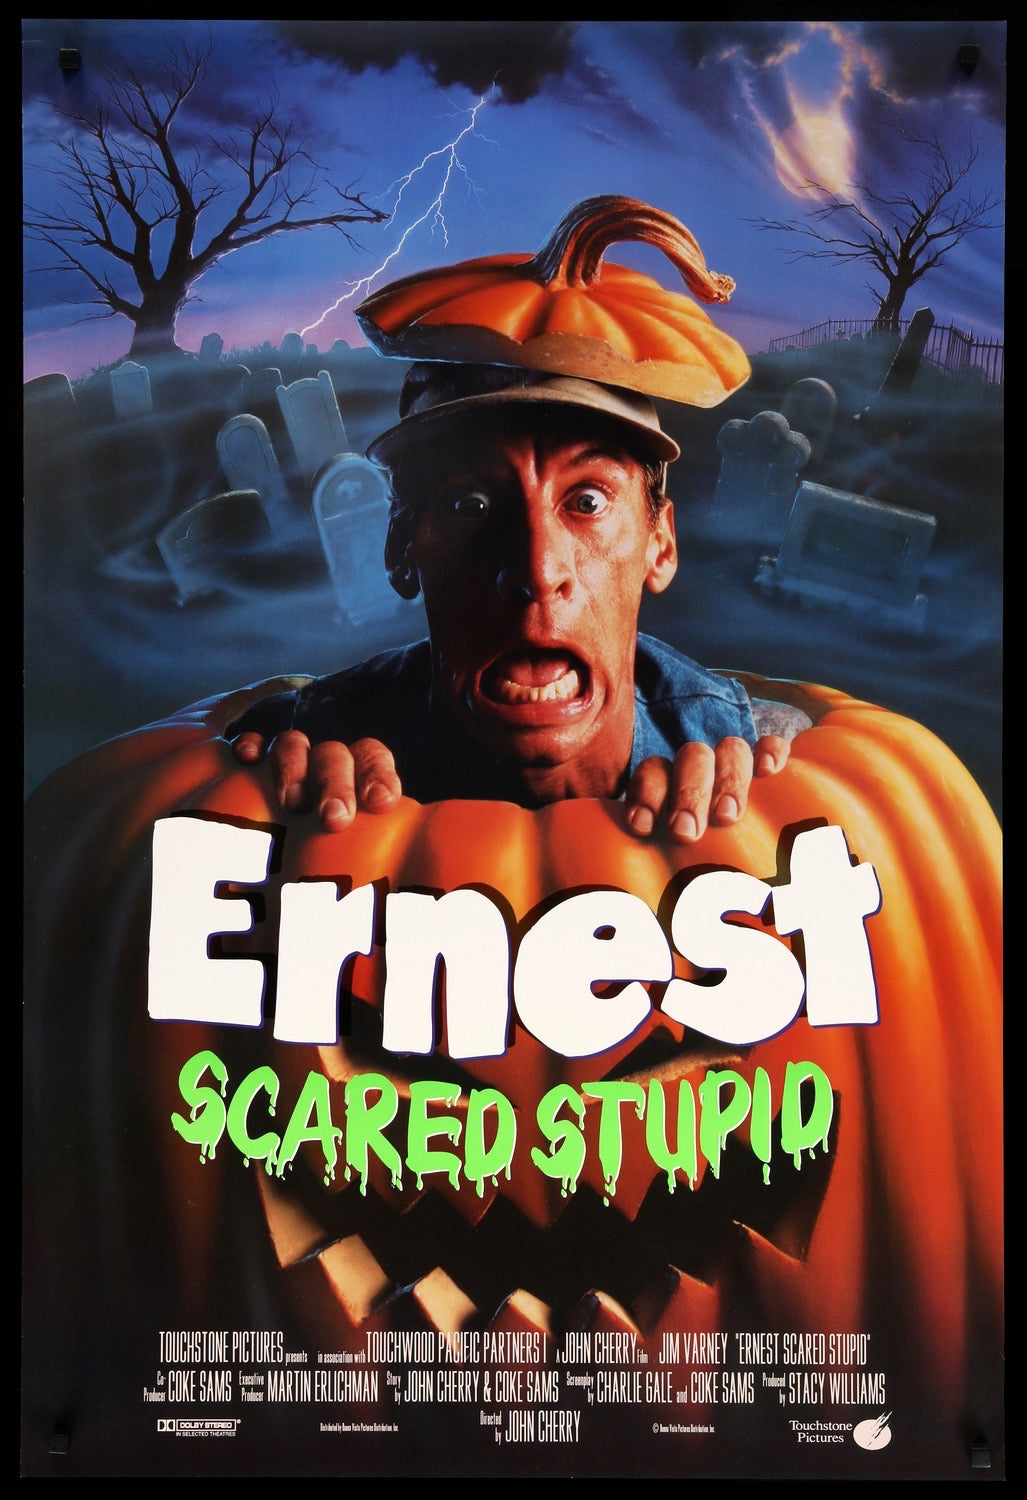 Ernest Scared Stupid (1991) original movie poster for sale at Original Film Art